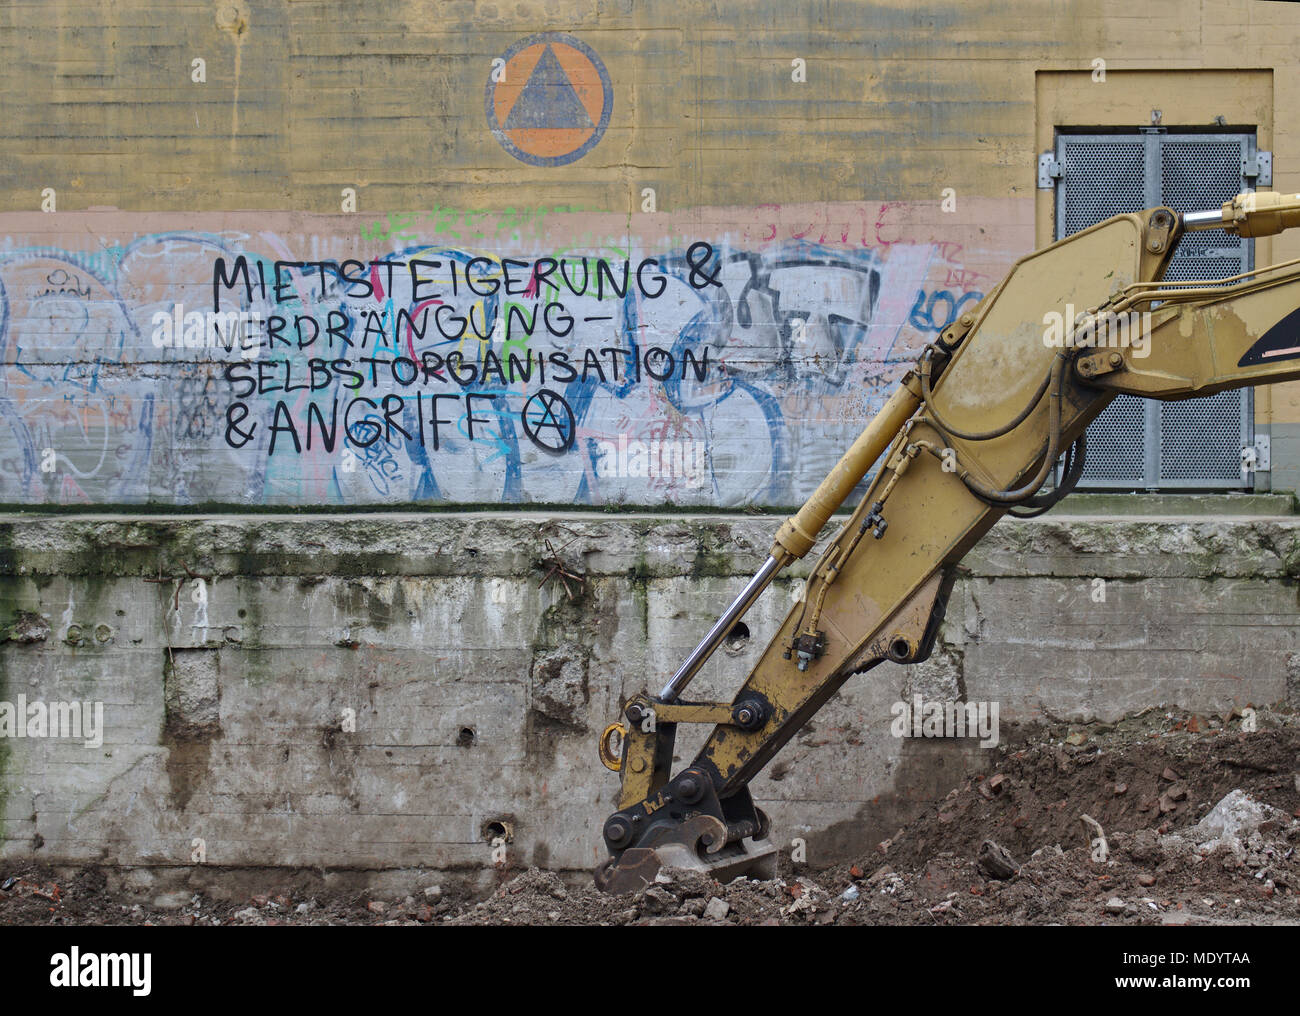 Bremen, Allemagne - 29 janvier 2018 - bâtiment abandonné mur de graffiti dire "augmentation de loyer et expulsion - auto-organisation & attack" en allemand Banque D'Images